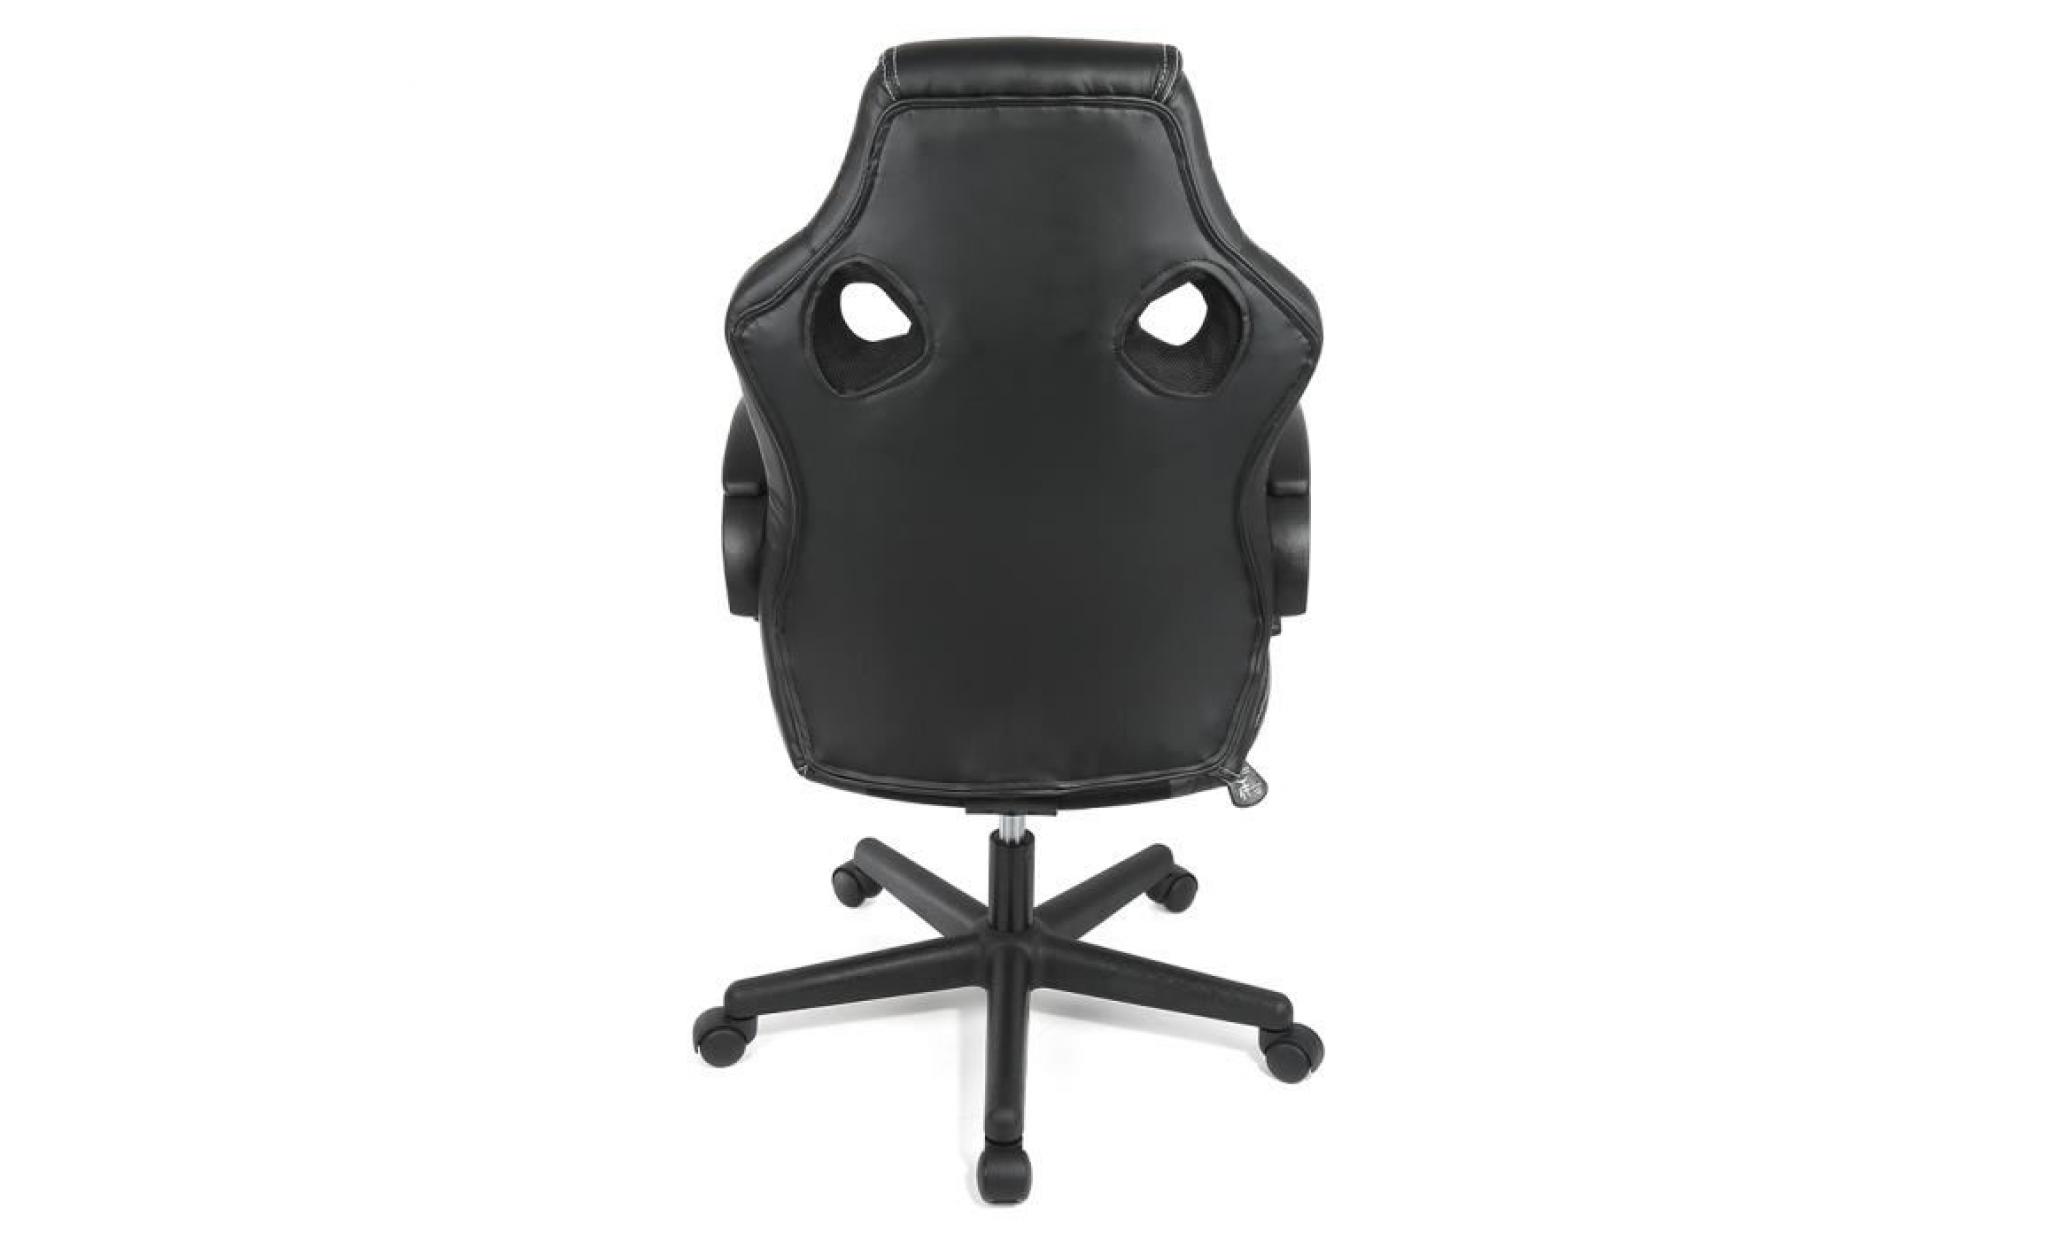 aubays fauteuil de bureau chaise pour ordinateur pu, lift sgs contrôlé noir pas cher